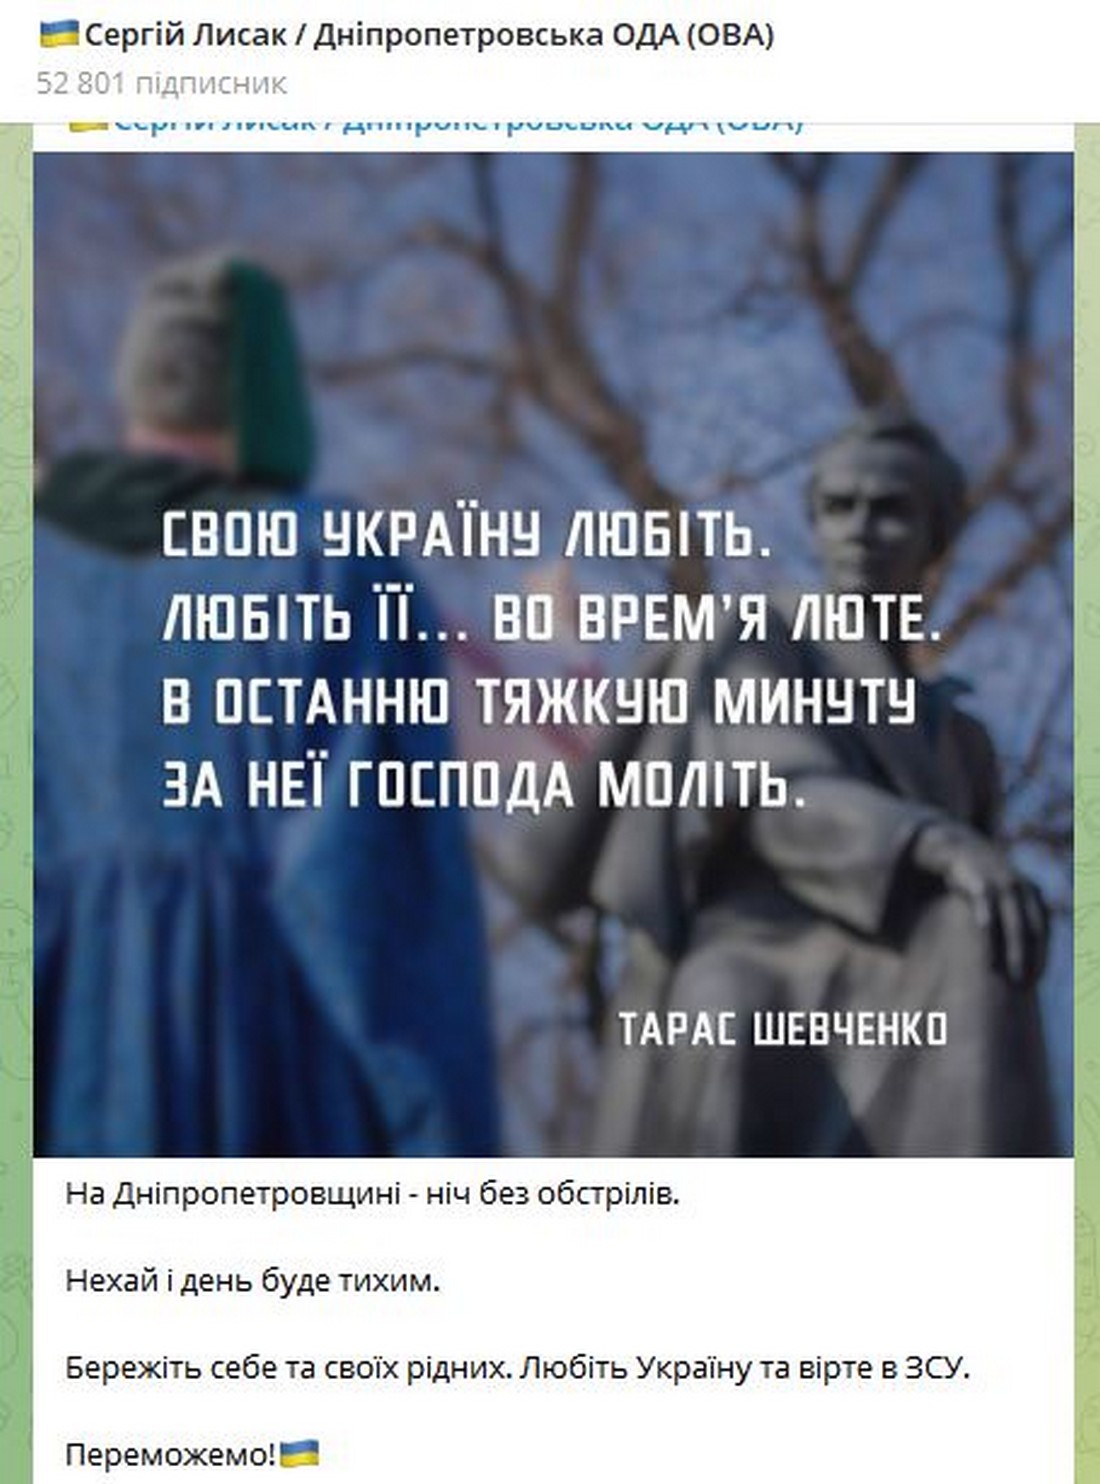 Ніч 29 квітня на Дніпропетровщині пройшла без обстрілів